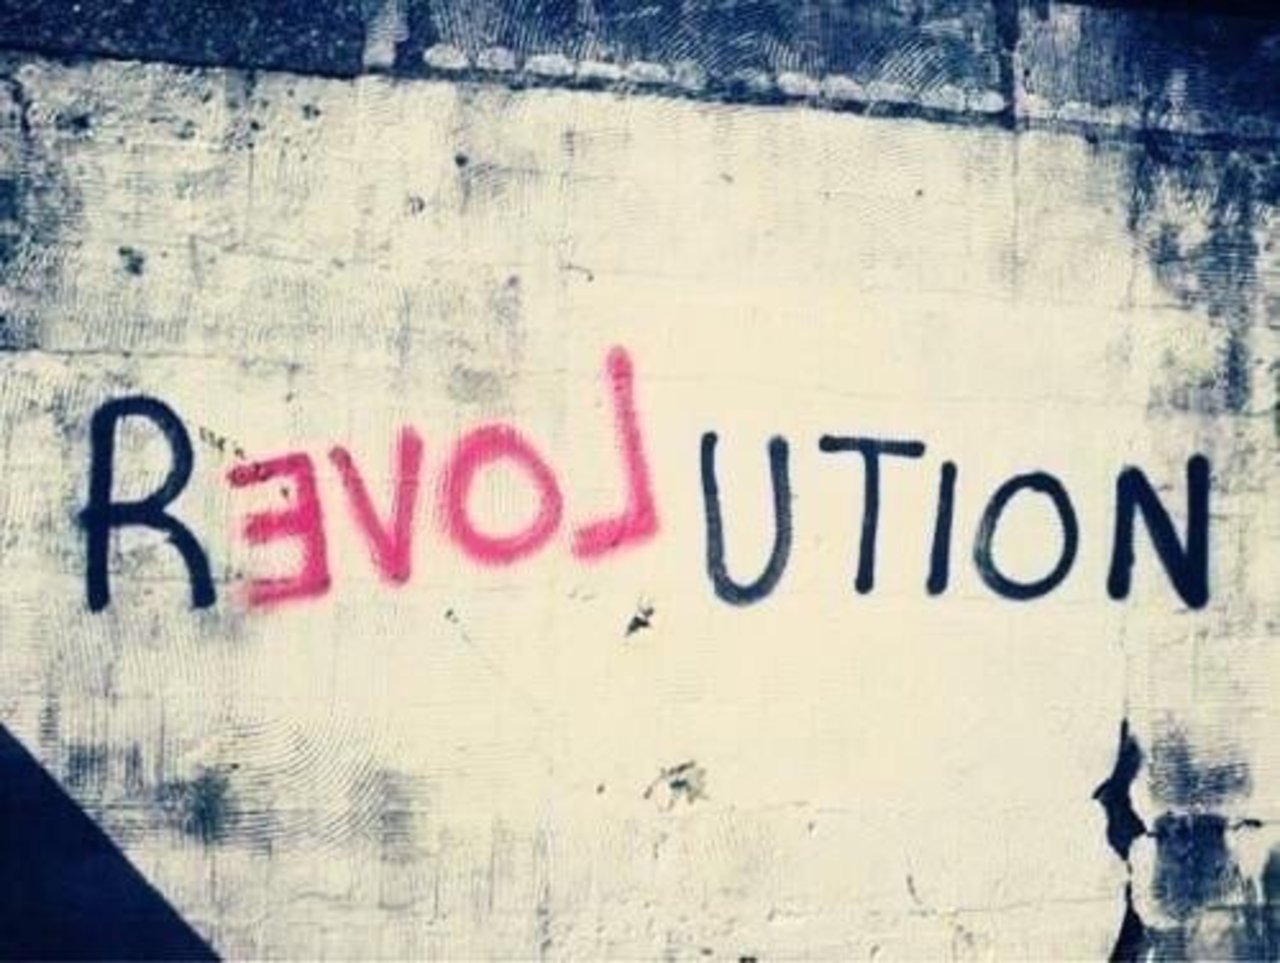 #Love Revolution – #Creative #StreetArt – Be ▲rtist – Be ▲rt Magazine https://beartistbeart.com/2016/12/02/love-revolution-creative-streetart/?utm_campaign=crowdfire&utm_content=crowdfire&utm_medium=social&utm_source=twitter https://t.co/KhBzfdI9s0